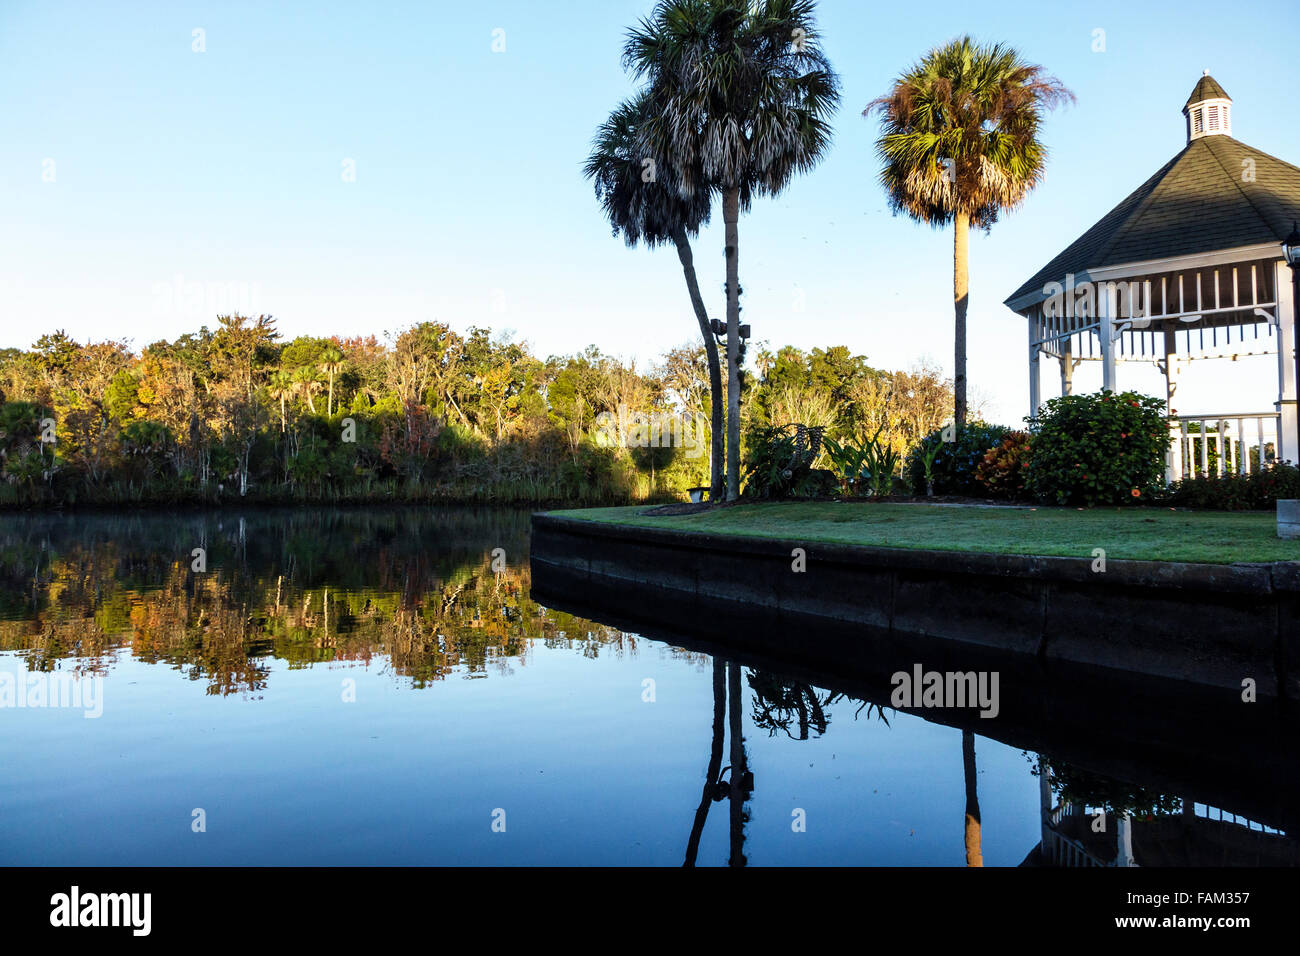 Florida Crystal River Wasser, Kings Bay Wasserkanal, Pavillon, Manatee Heiligtum, Besucher reisen Reise Tour Tourismus Wahrzeichen Kultur c Stockfoto